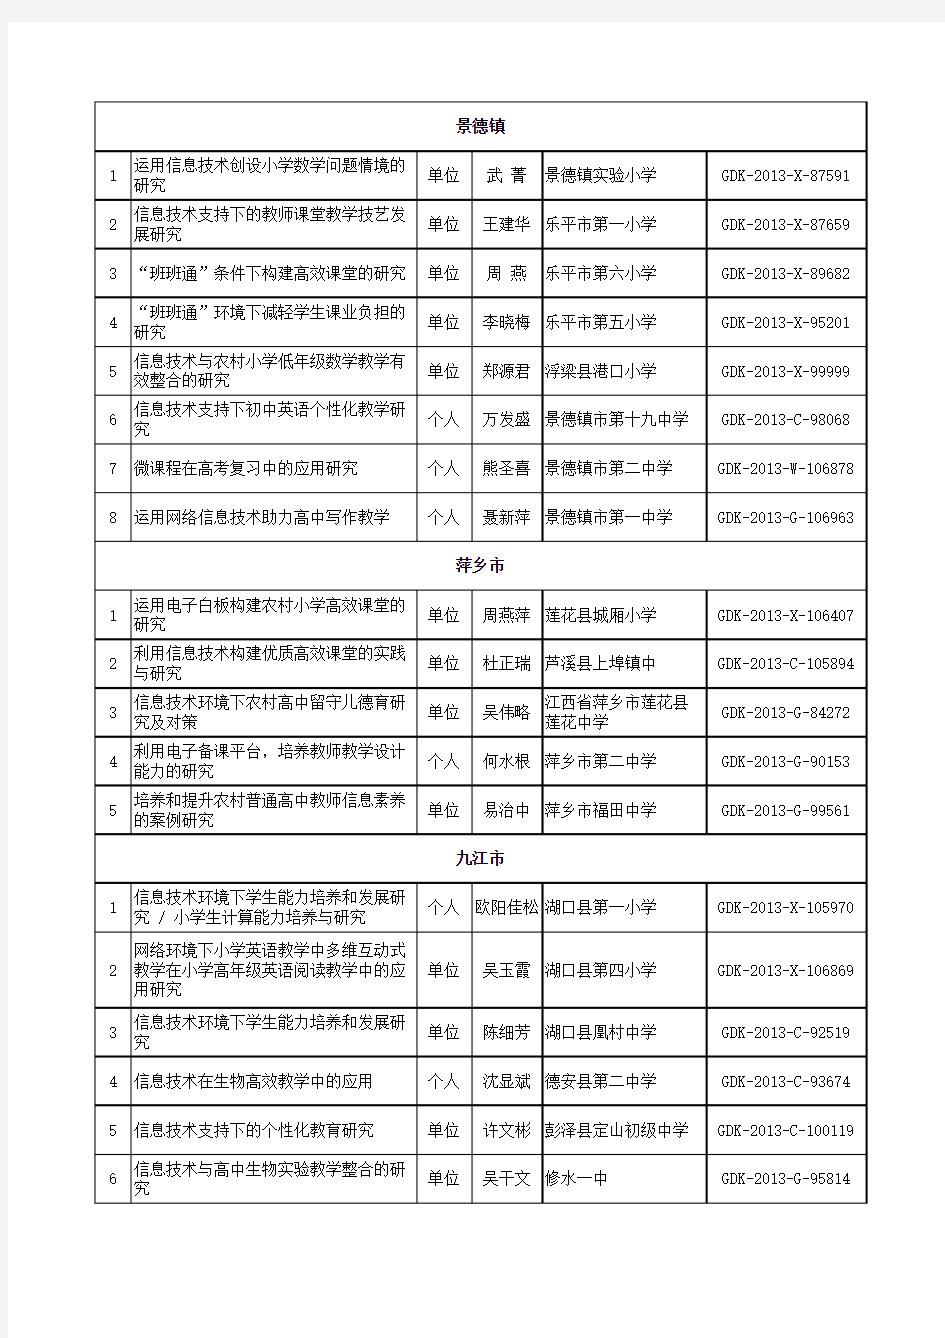 江西省中小学、幼儿园教育信息技术研究单2013年度立项课题名单汇总表